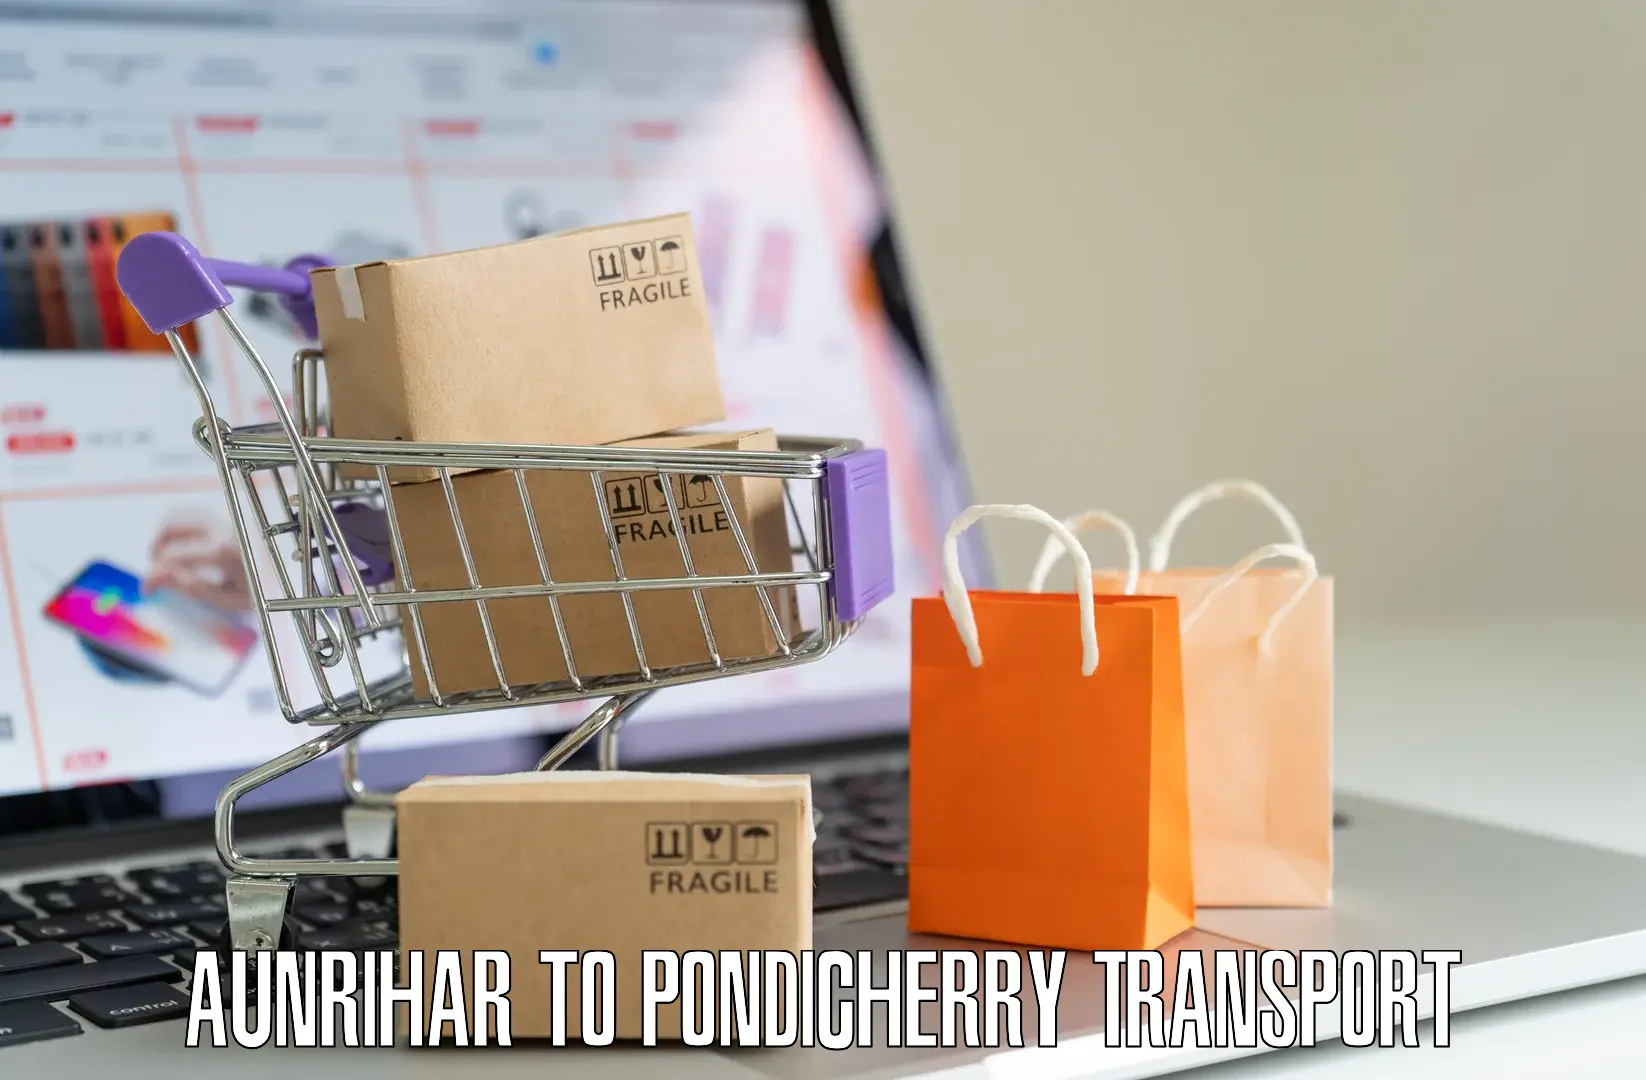 Shipping partner Aunrihar to Pondicherry University